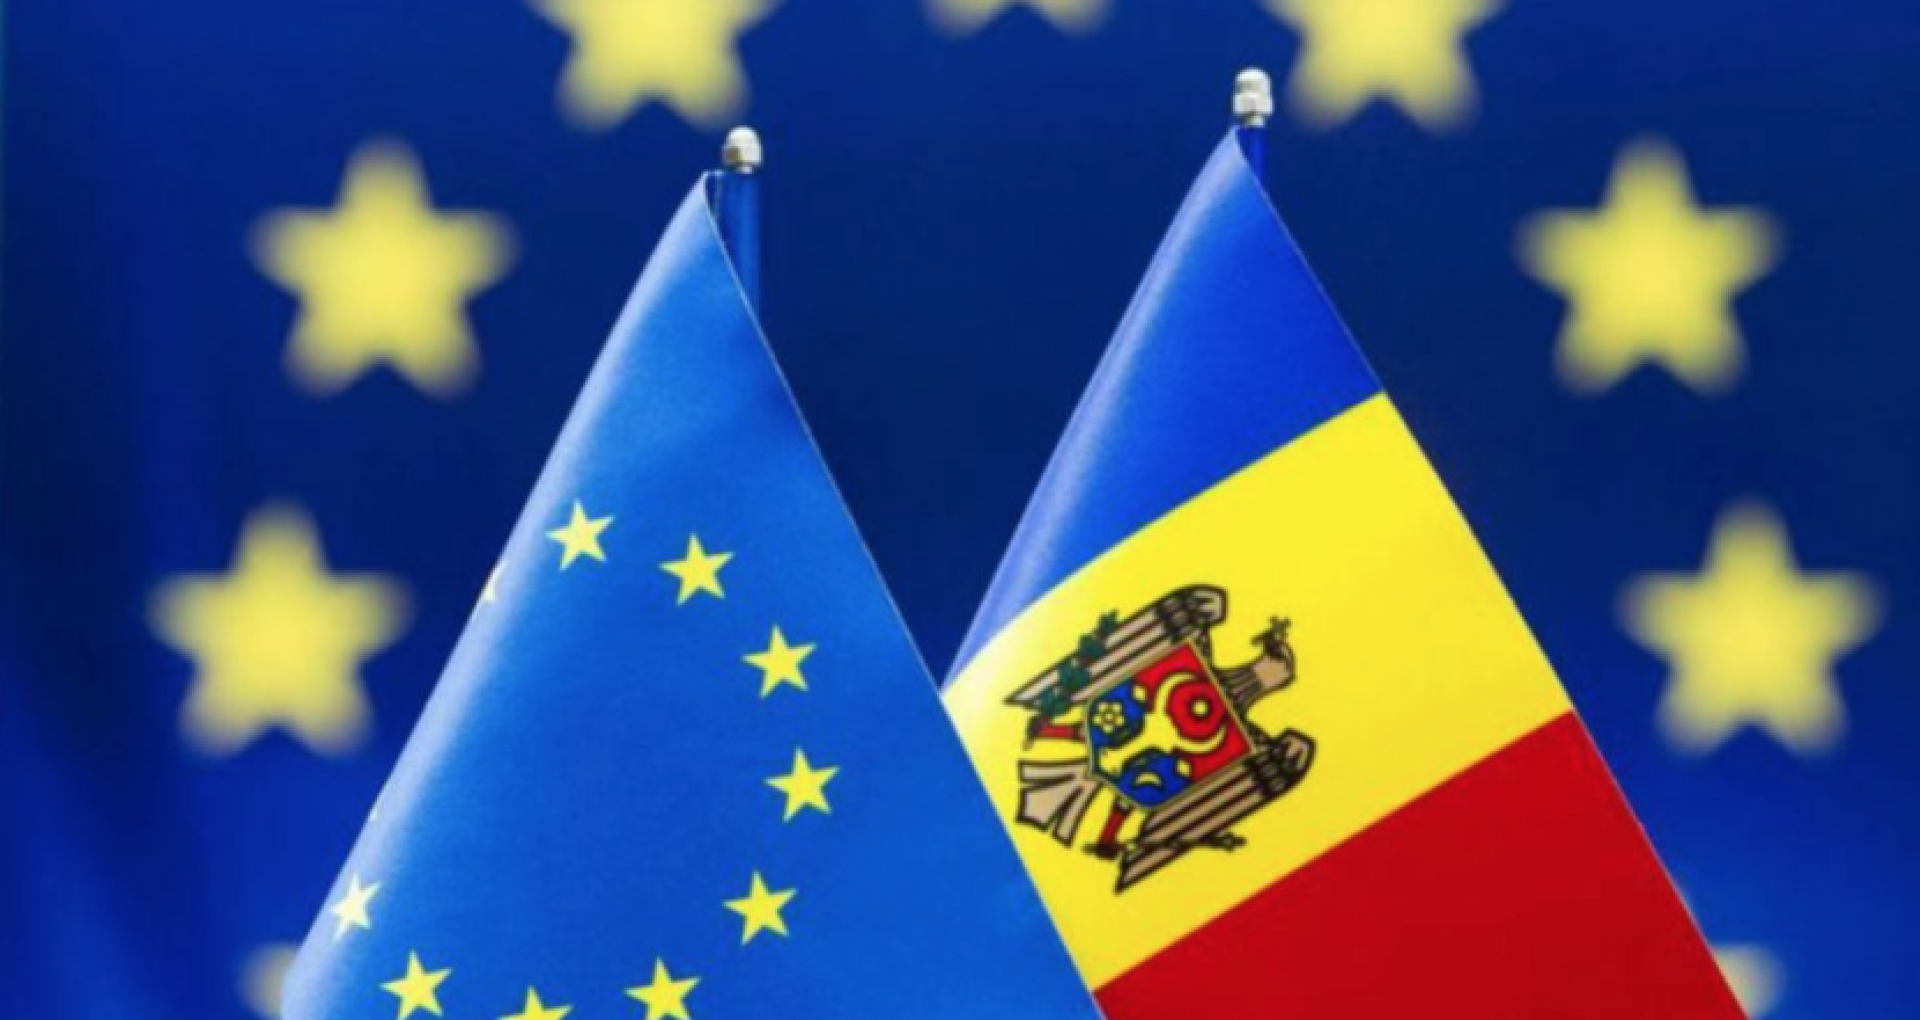  Ministerul Justiţiei anunţă sprijin pentru Republica Moldova în procesul de aderare la UE